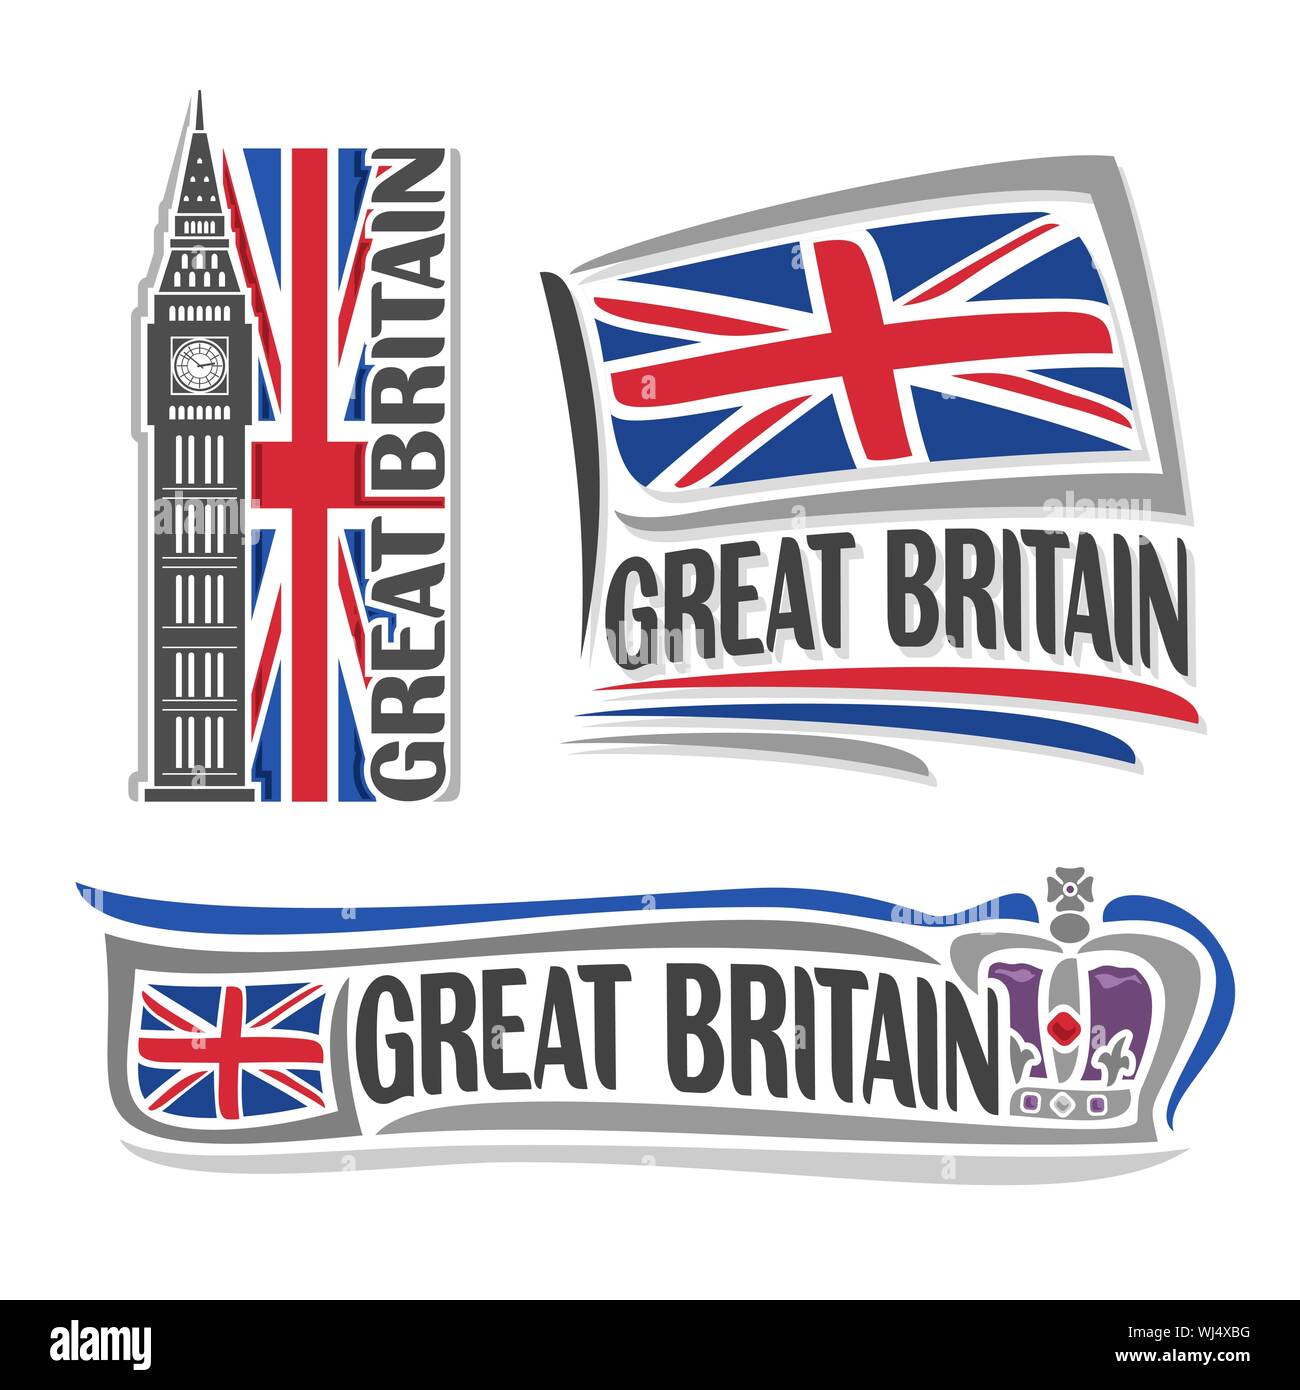 Vector Illustration logo für Großbritannien Architektur, 3 isolierte Illustrationen: Flagge Union Jack mit Big Ben, britisches Englisch Symbol des Vereinigten König Stock Vektor